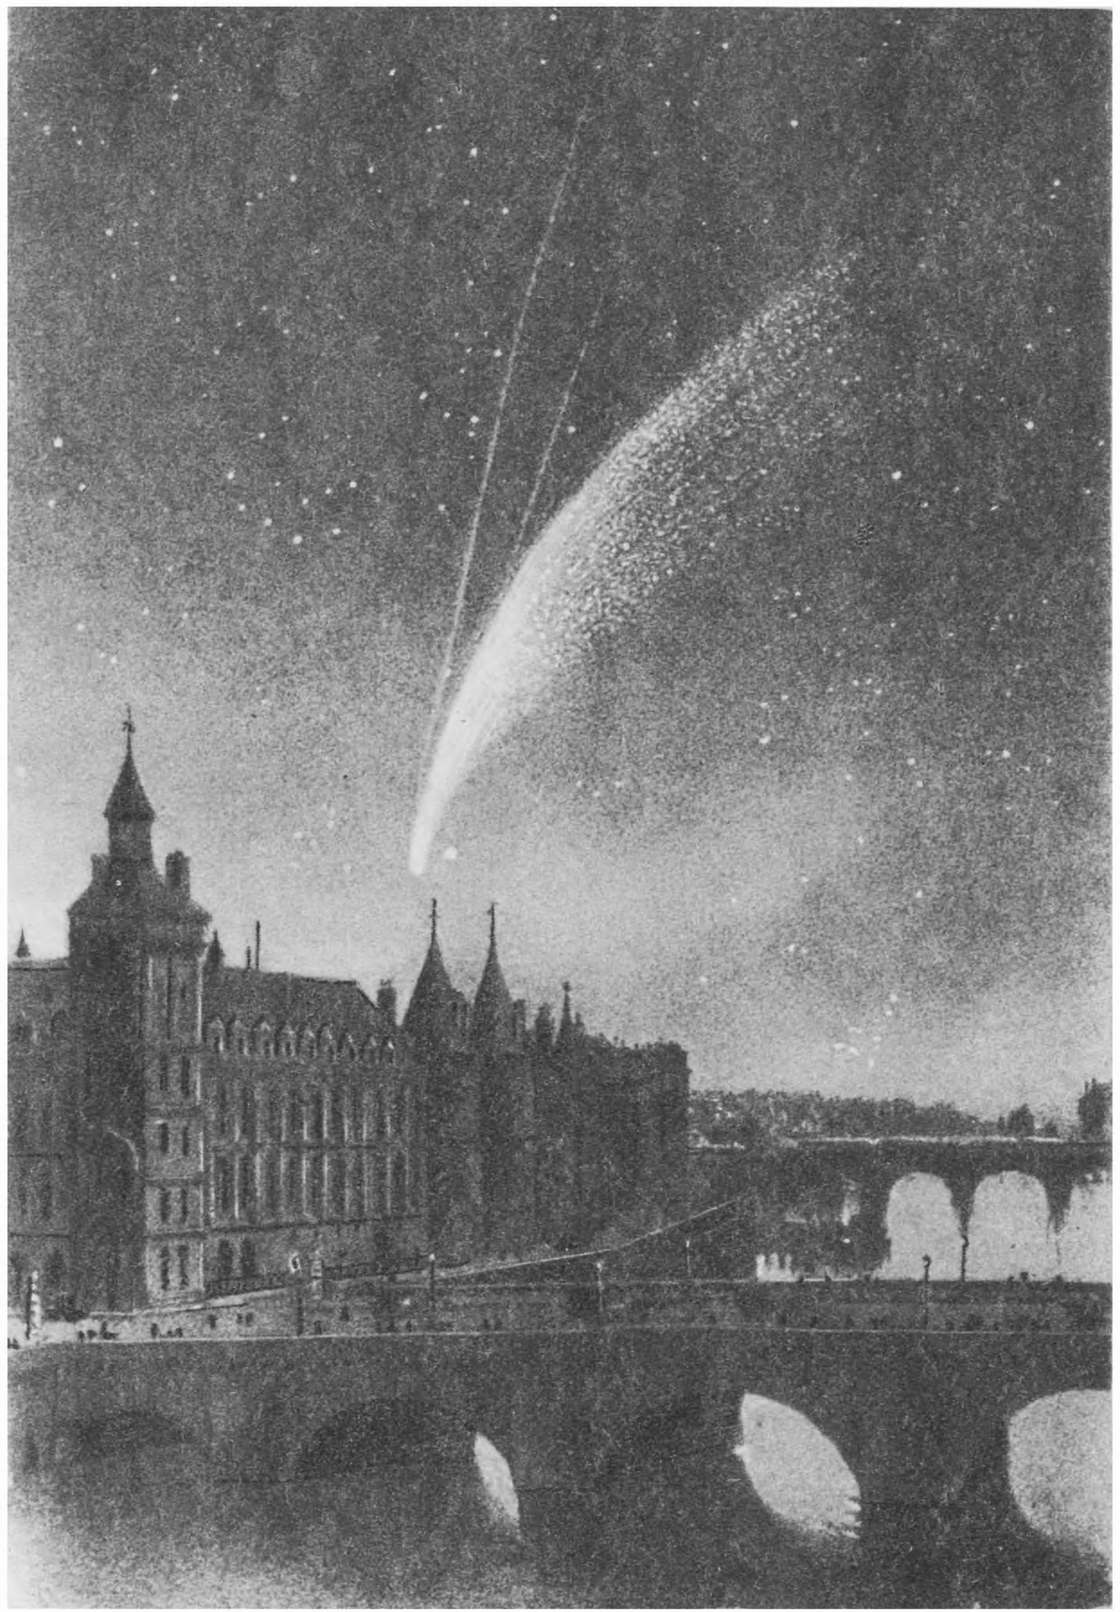 Яркая комета, появившаяся в 1858 году